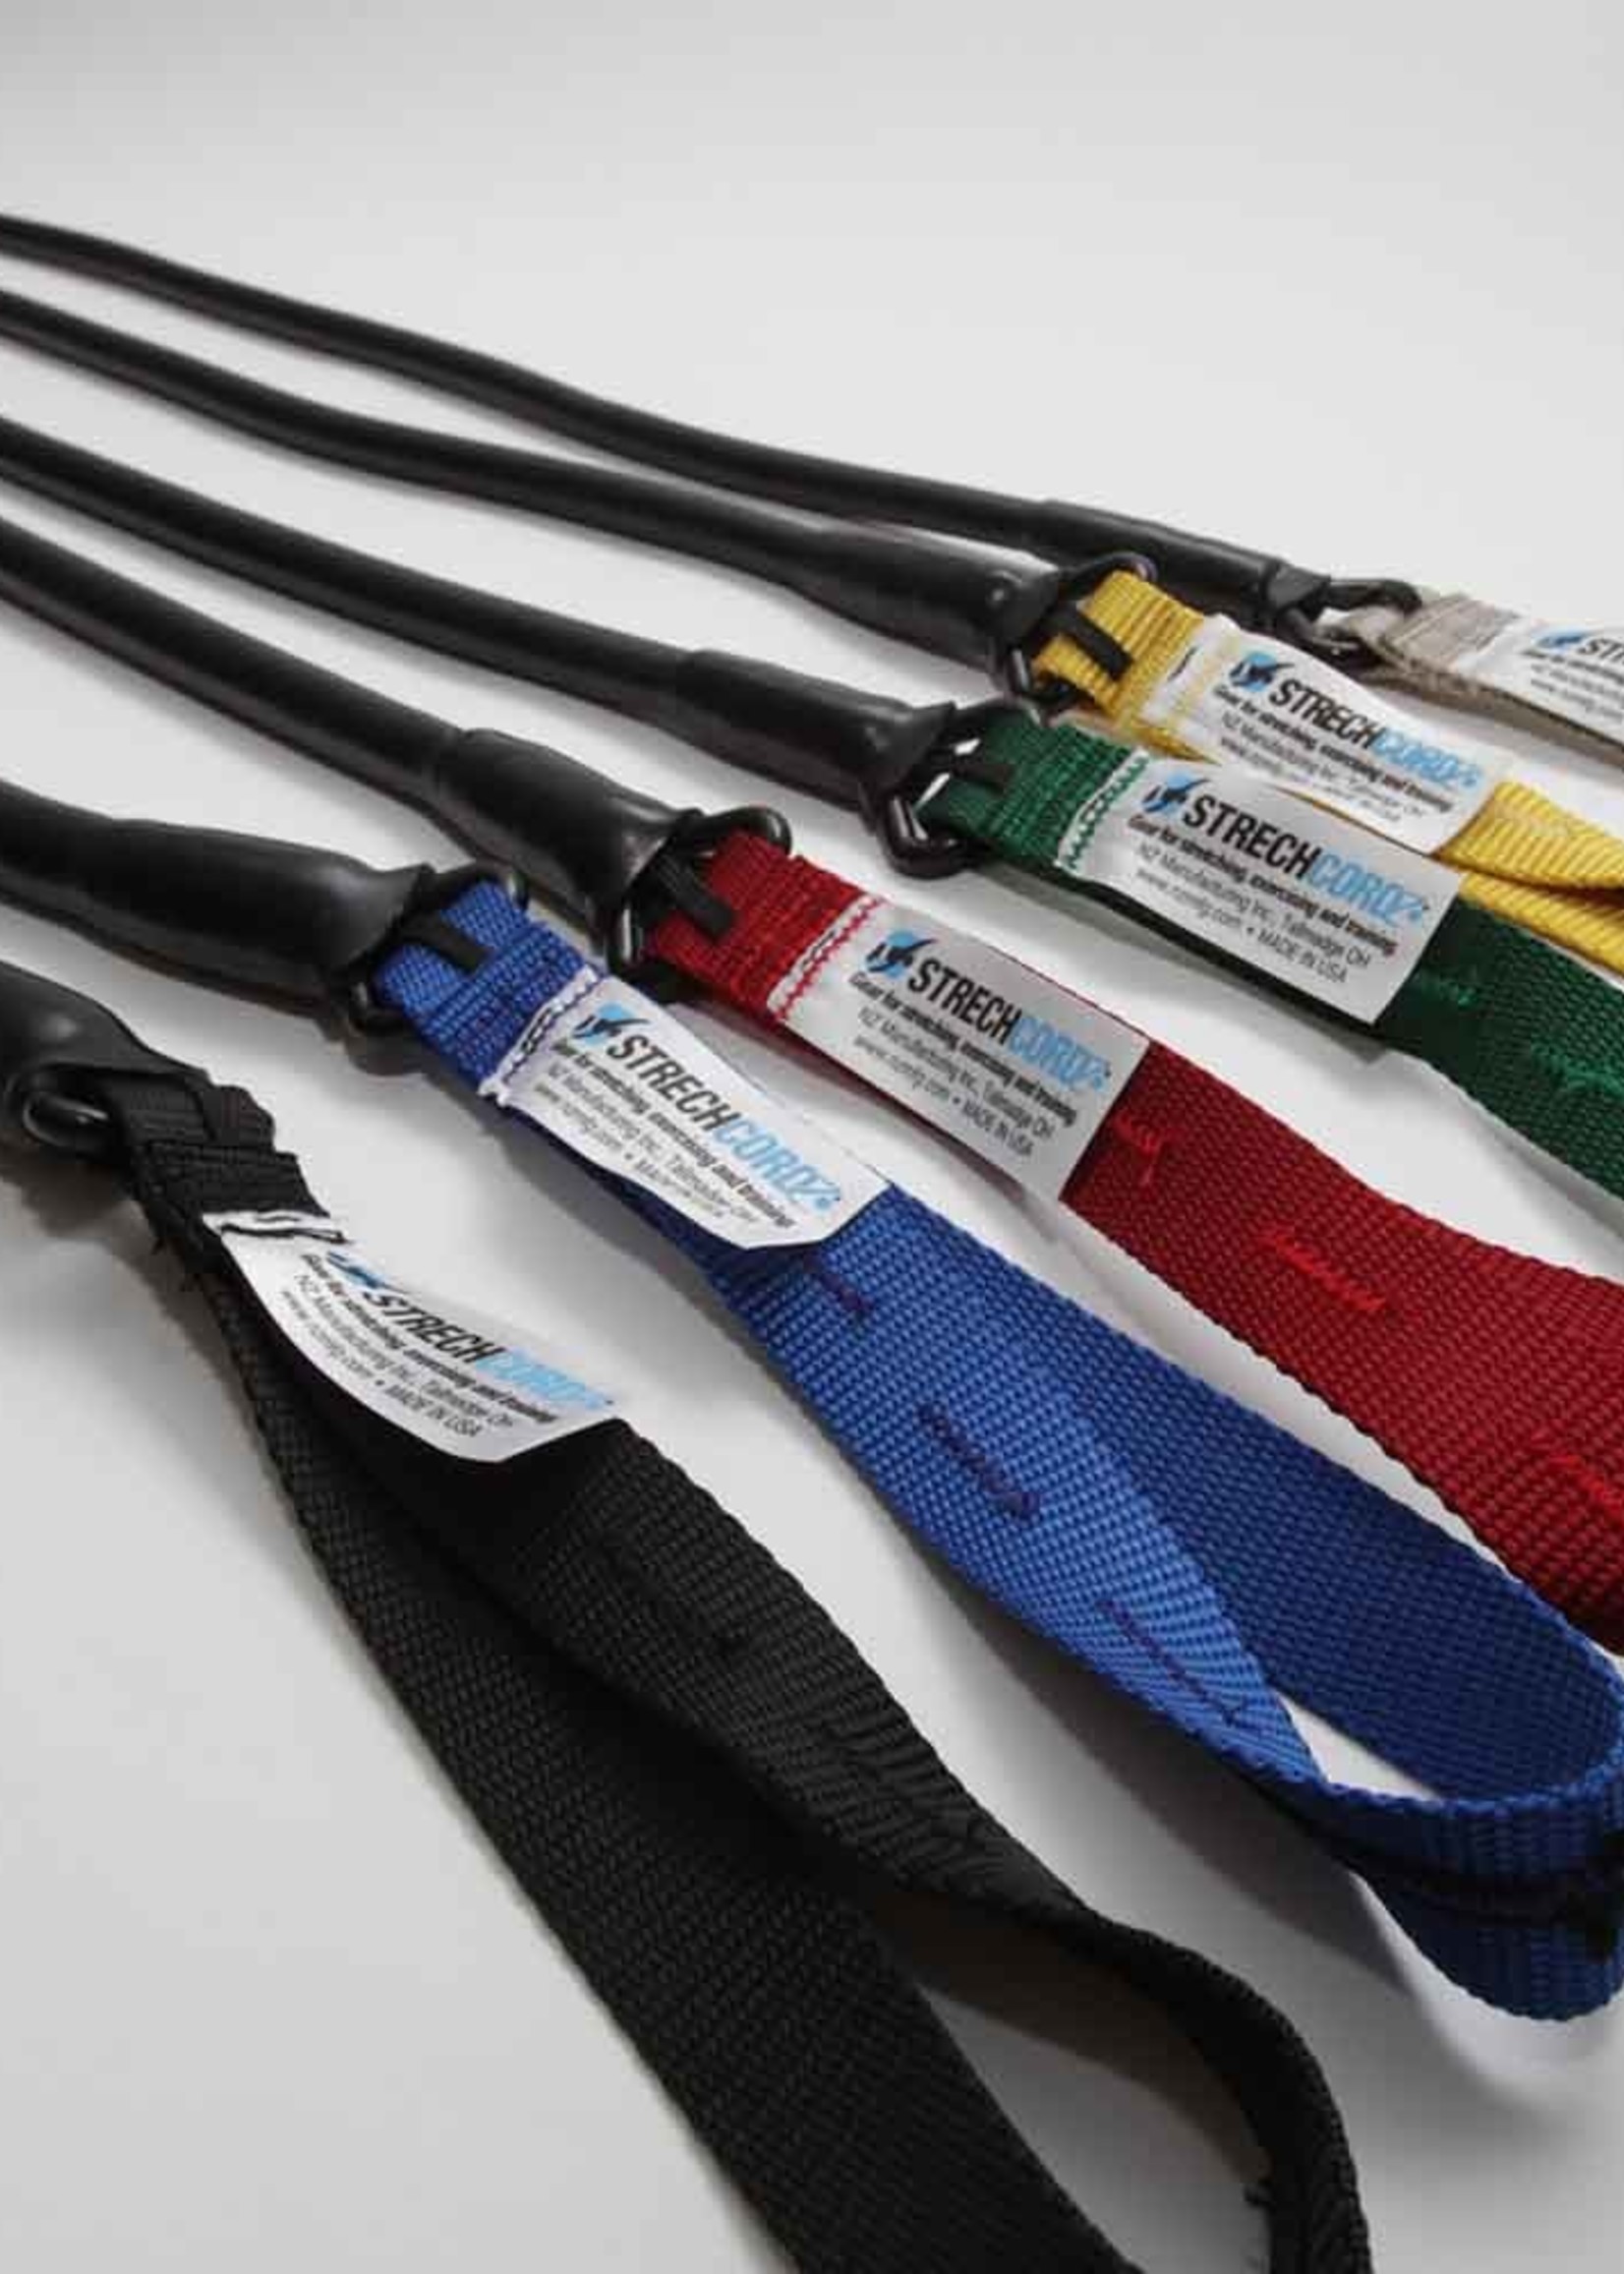 StrechCordz Safety Short Belt, Replacement Safety Cord Tubing